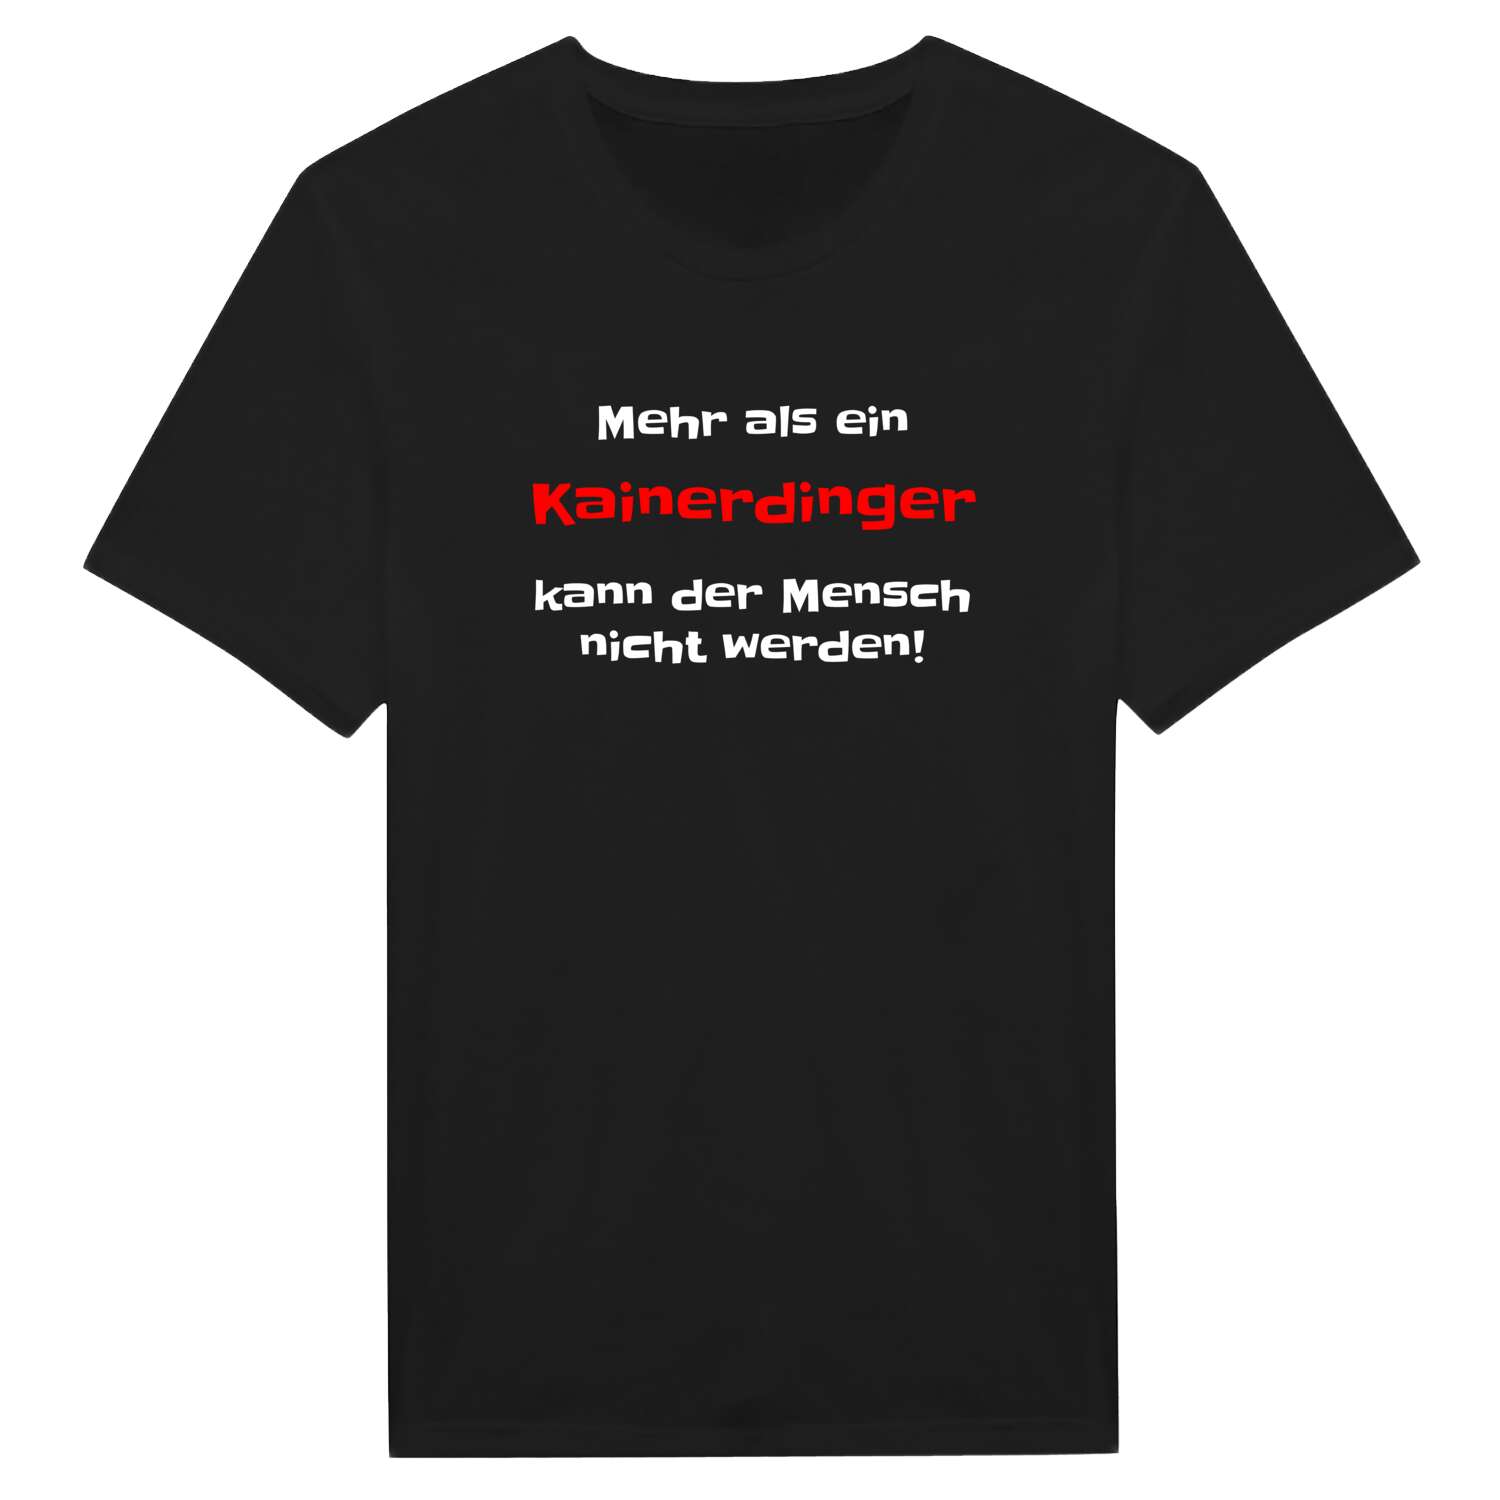 Kainerding T-Shirt »Mehr als ein«